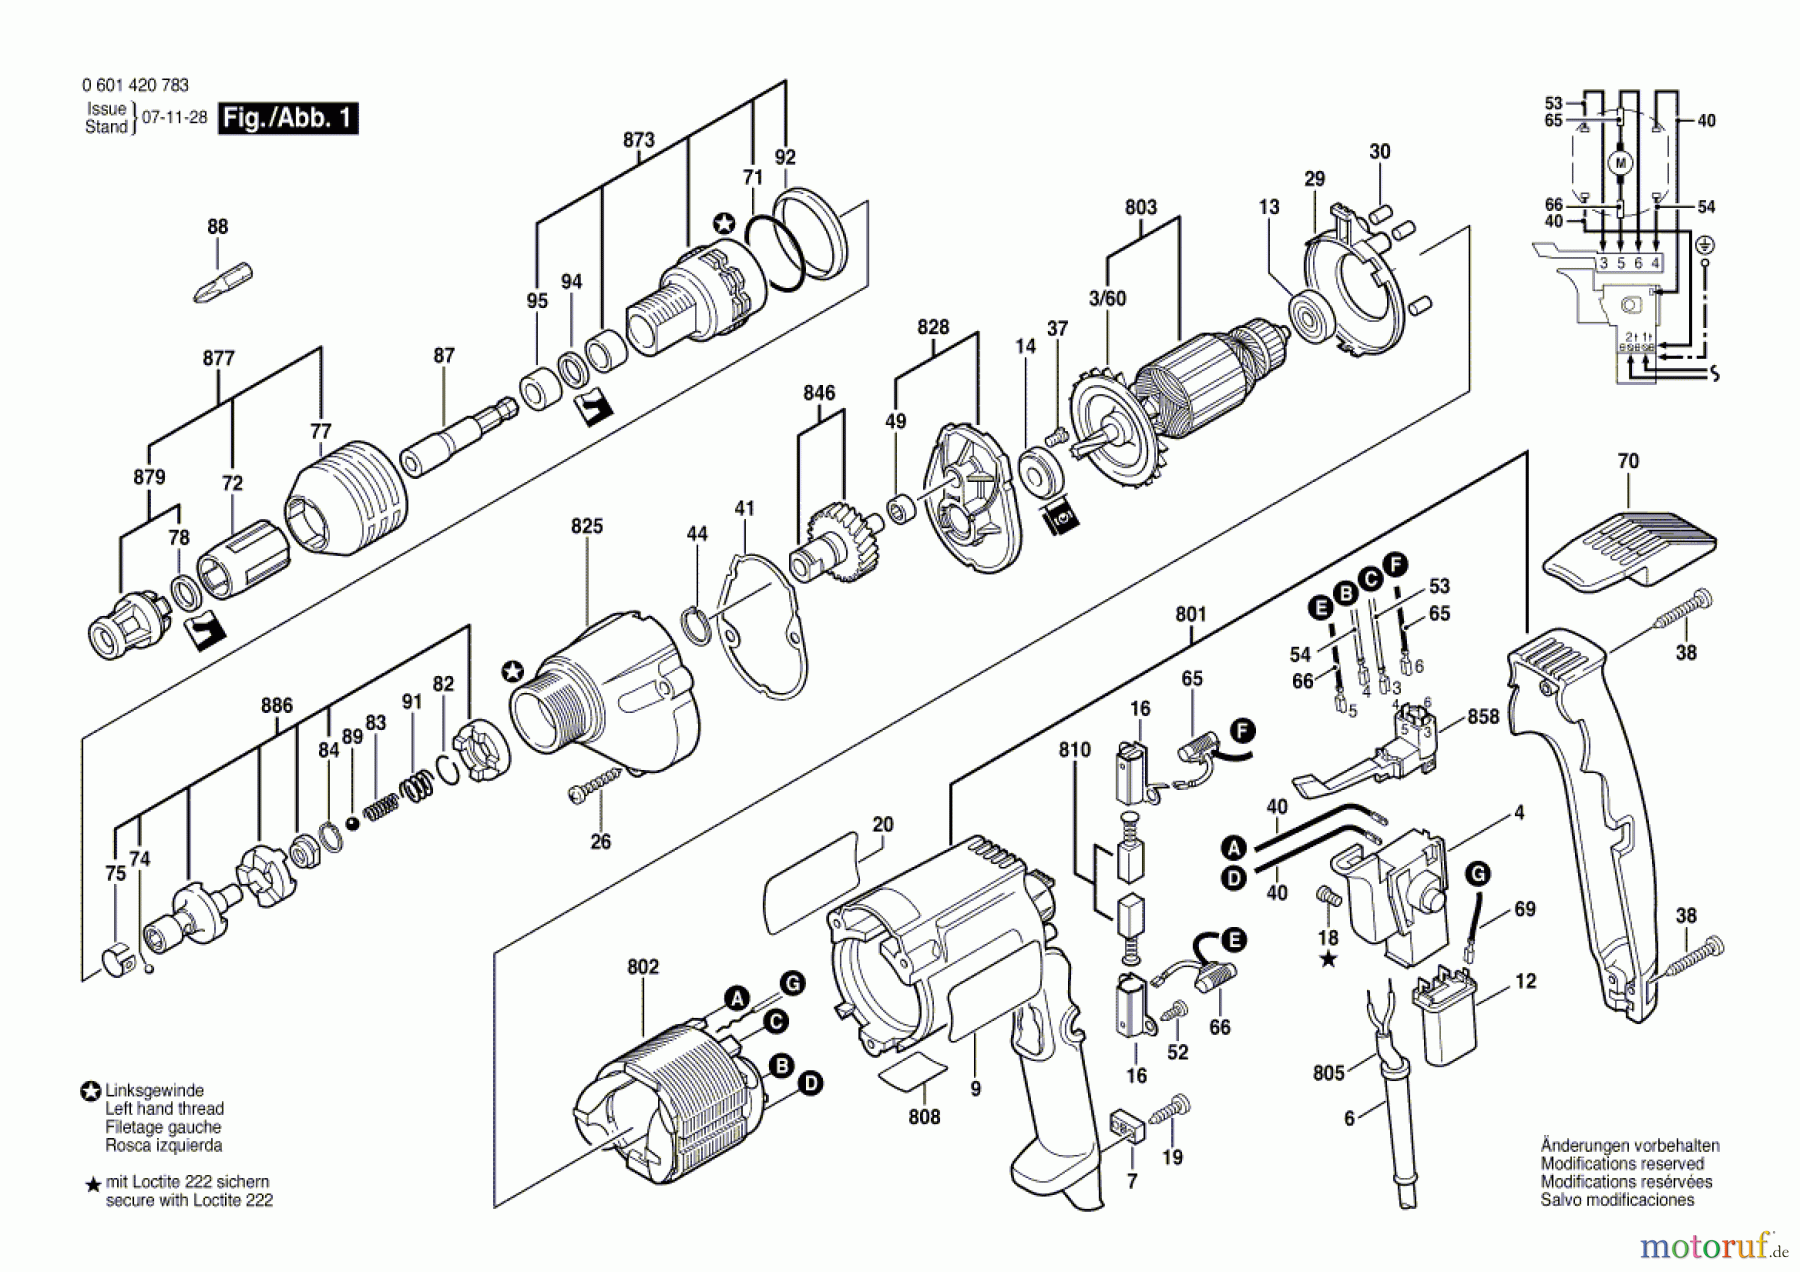  Bosch Werkzeug Bohrschrauber BSR 6-40 TE Seite 1